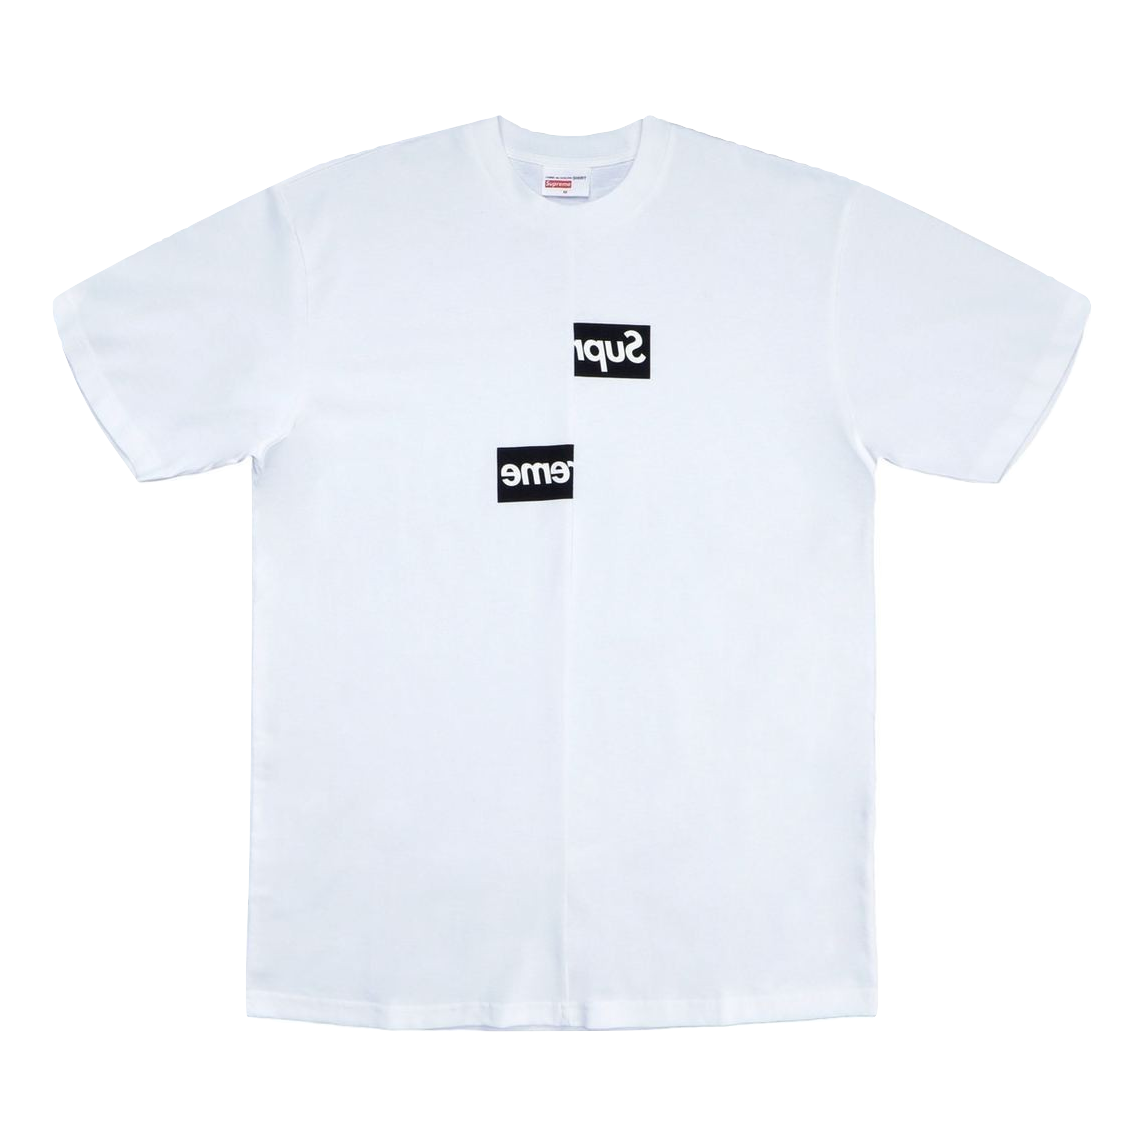 Supreme x CDG De Garcons) Shirt Split Box Logo Tee - White SF